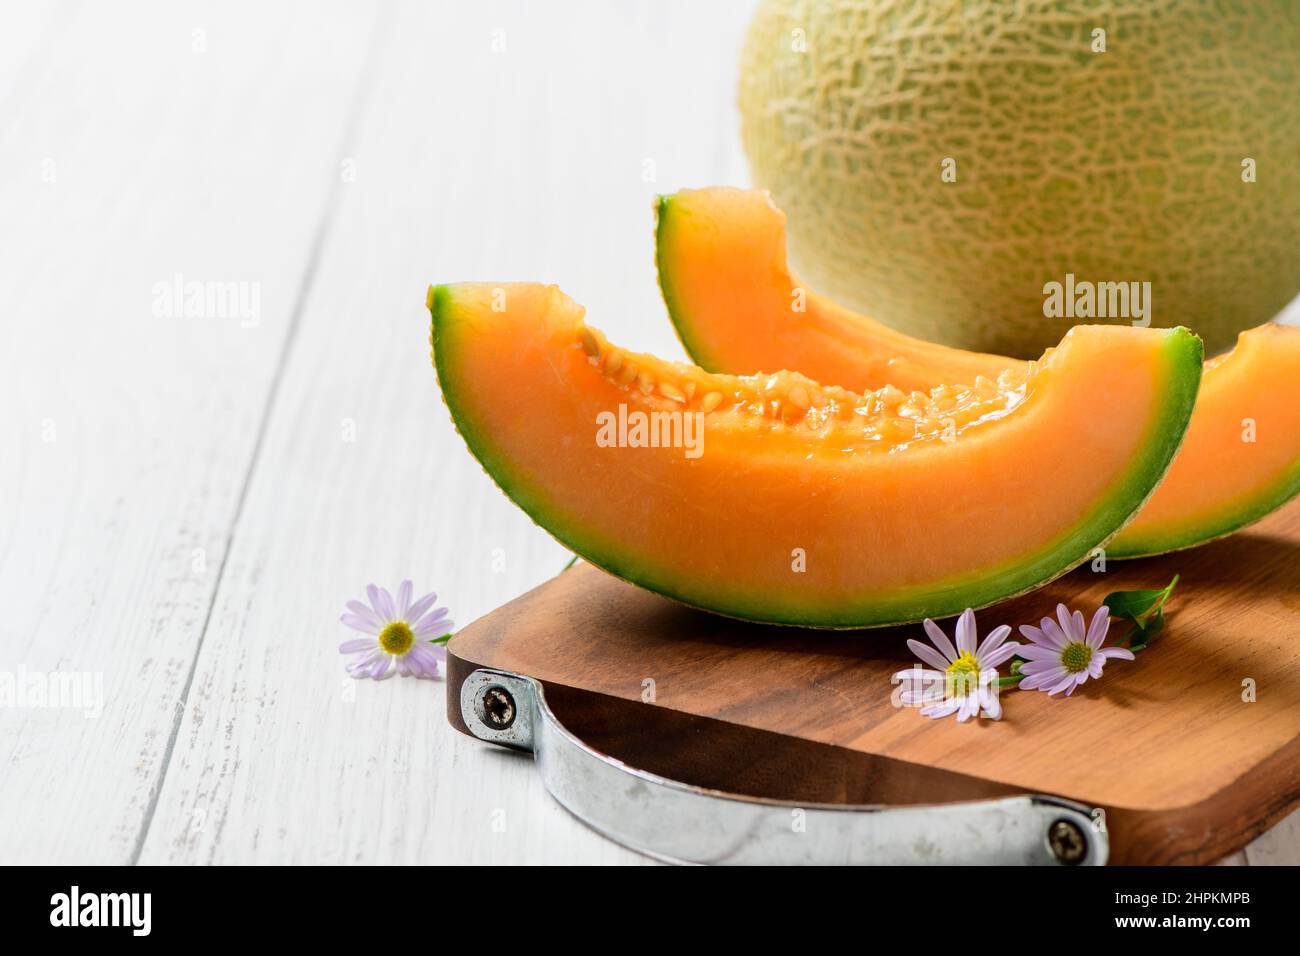 In Scheiben geschnitten aus japanischen Melonen, Honigmelone oder Cantaloupe (Cucumis melo) auf weißem Holztisch Hintergrund. Lieblingsfrucht im Sommer. Gesundheitskonzept. Stockfoto